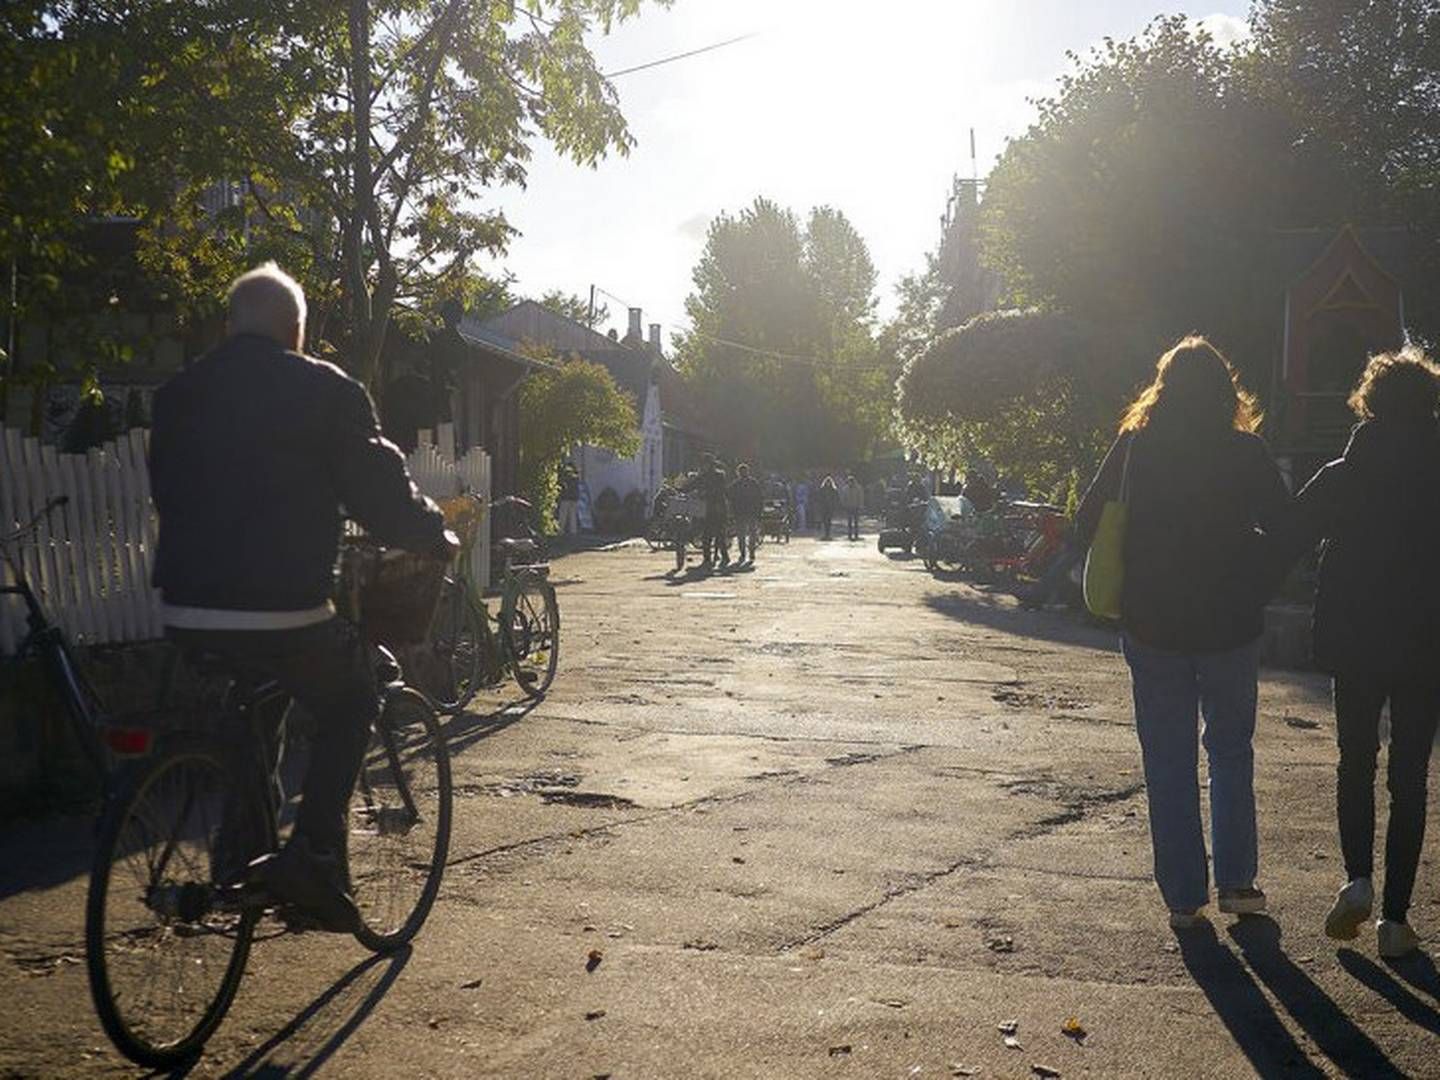 Hvis Christiania siger ja til statens købstilbud, kommer man til at skulle have almene boliger på området. | Foto: Niels Ahlmann Olesen / Ritzau Scanpix